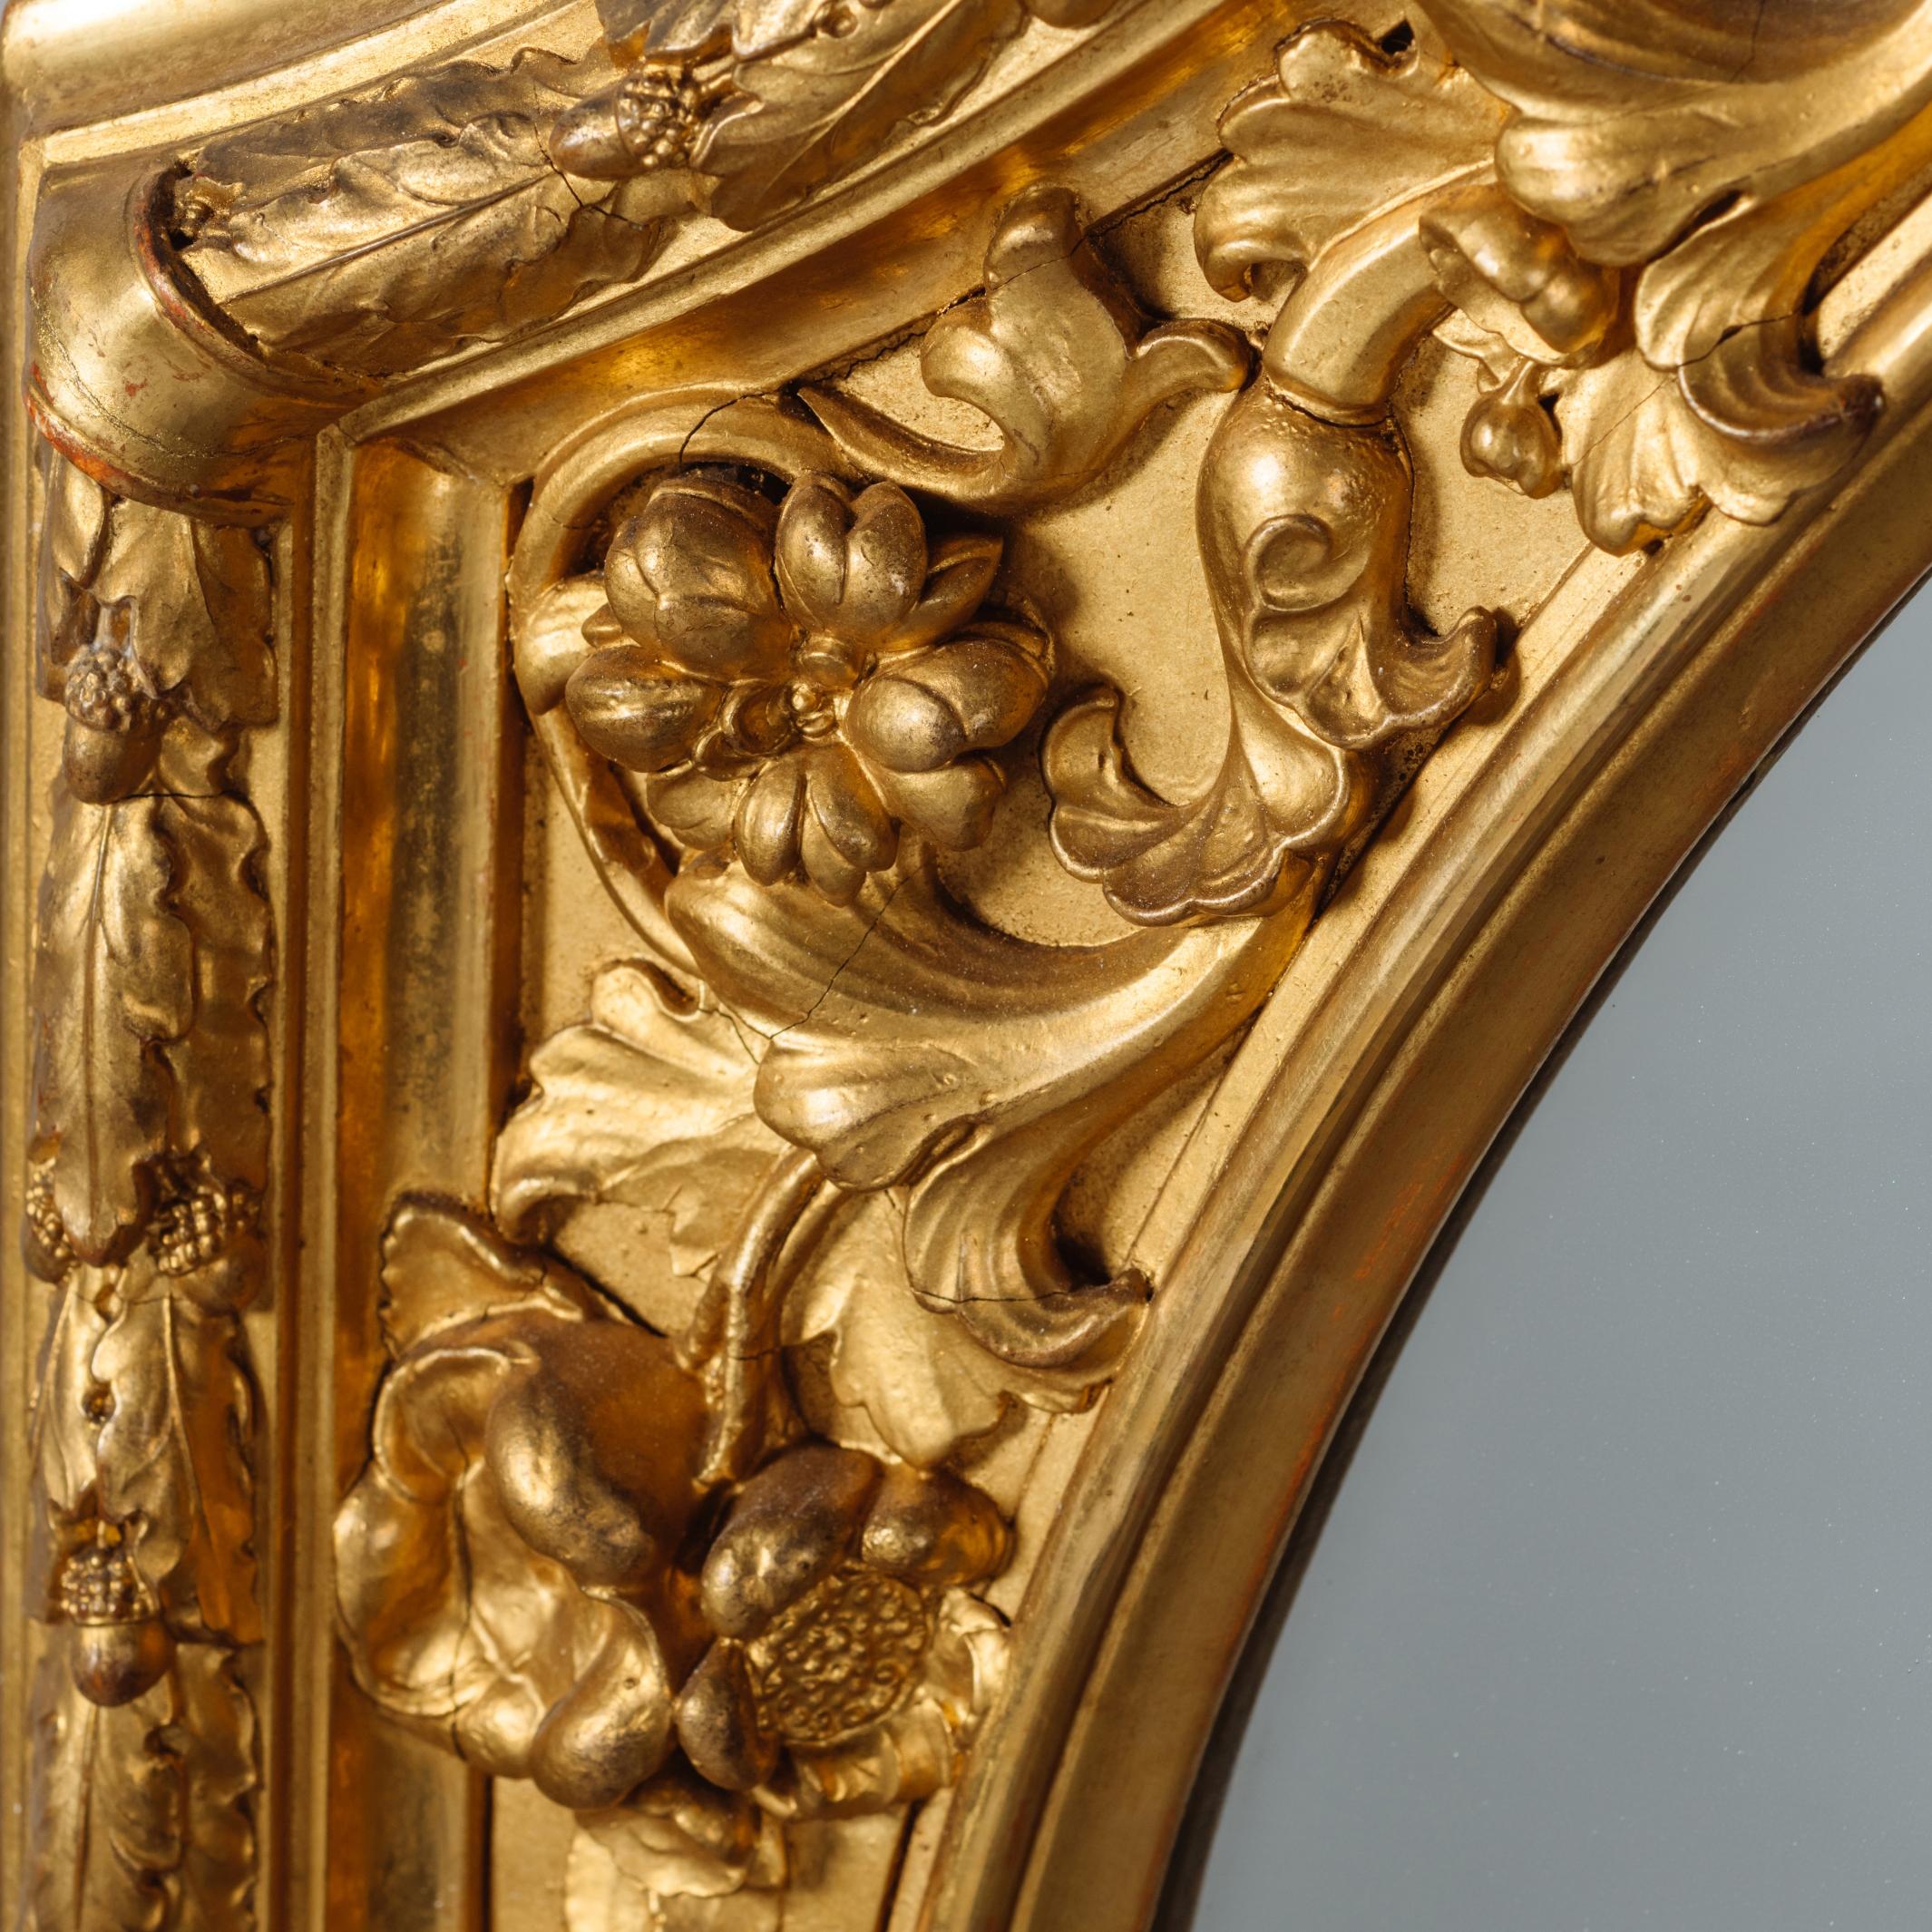 Une belle paire de grands miroirs en bois doré sculpté et gesso.

Chaque miroir présente une plaque de miroir arquée encadrée par des bordures sculptées de feuillages.

Probablement italien ou autrichien, vers 1870.